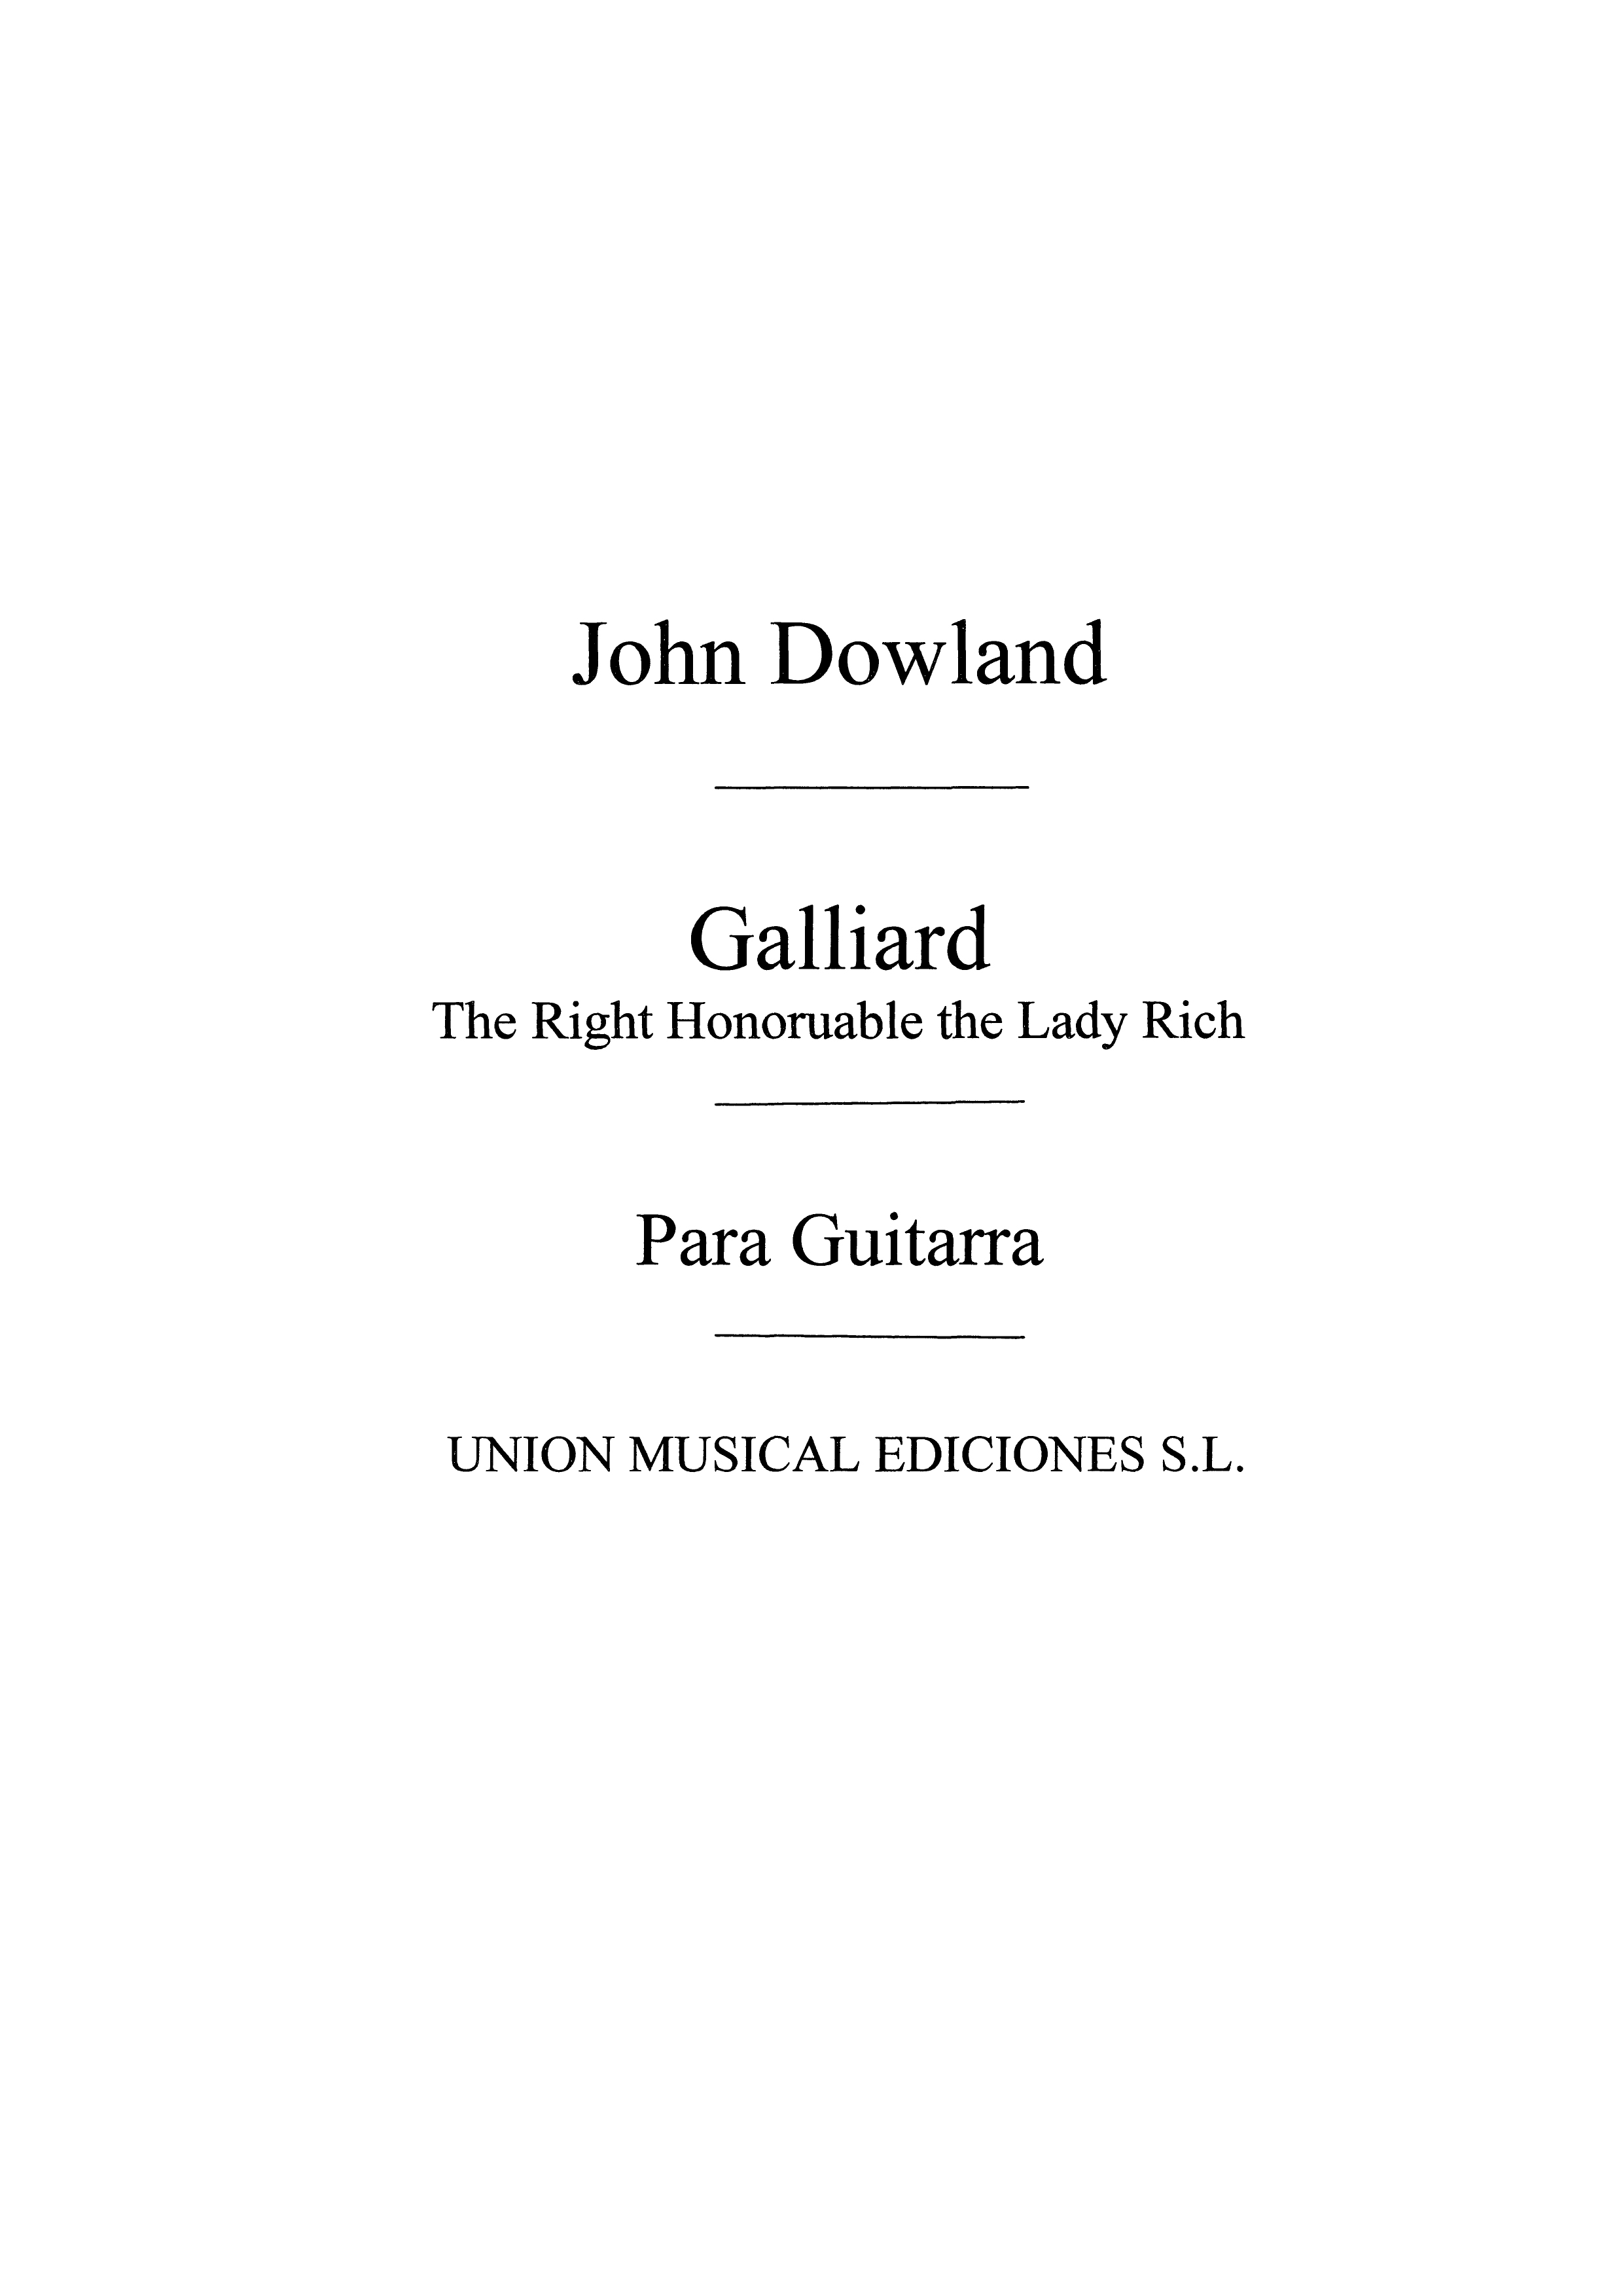 John Dowland: Galliard (Azpiazu) Guitar: Guitar: Instrumental Work